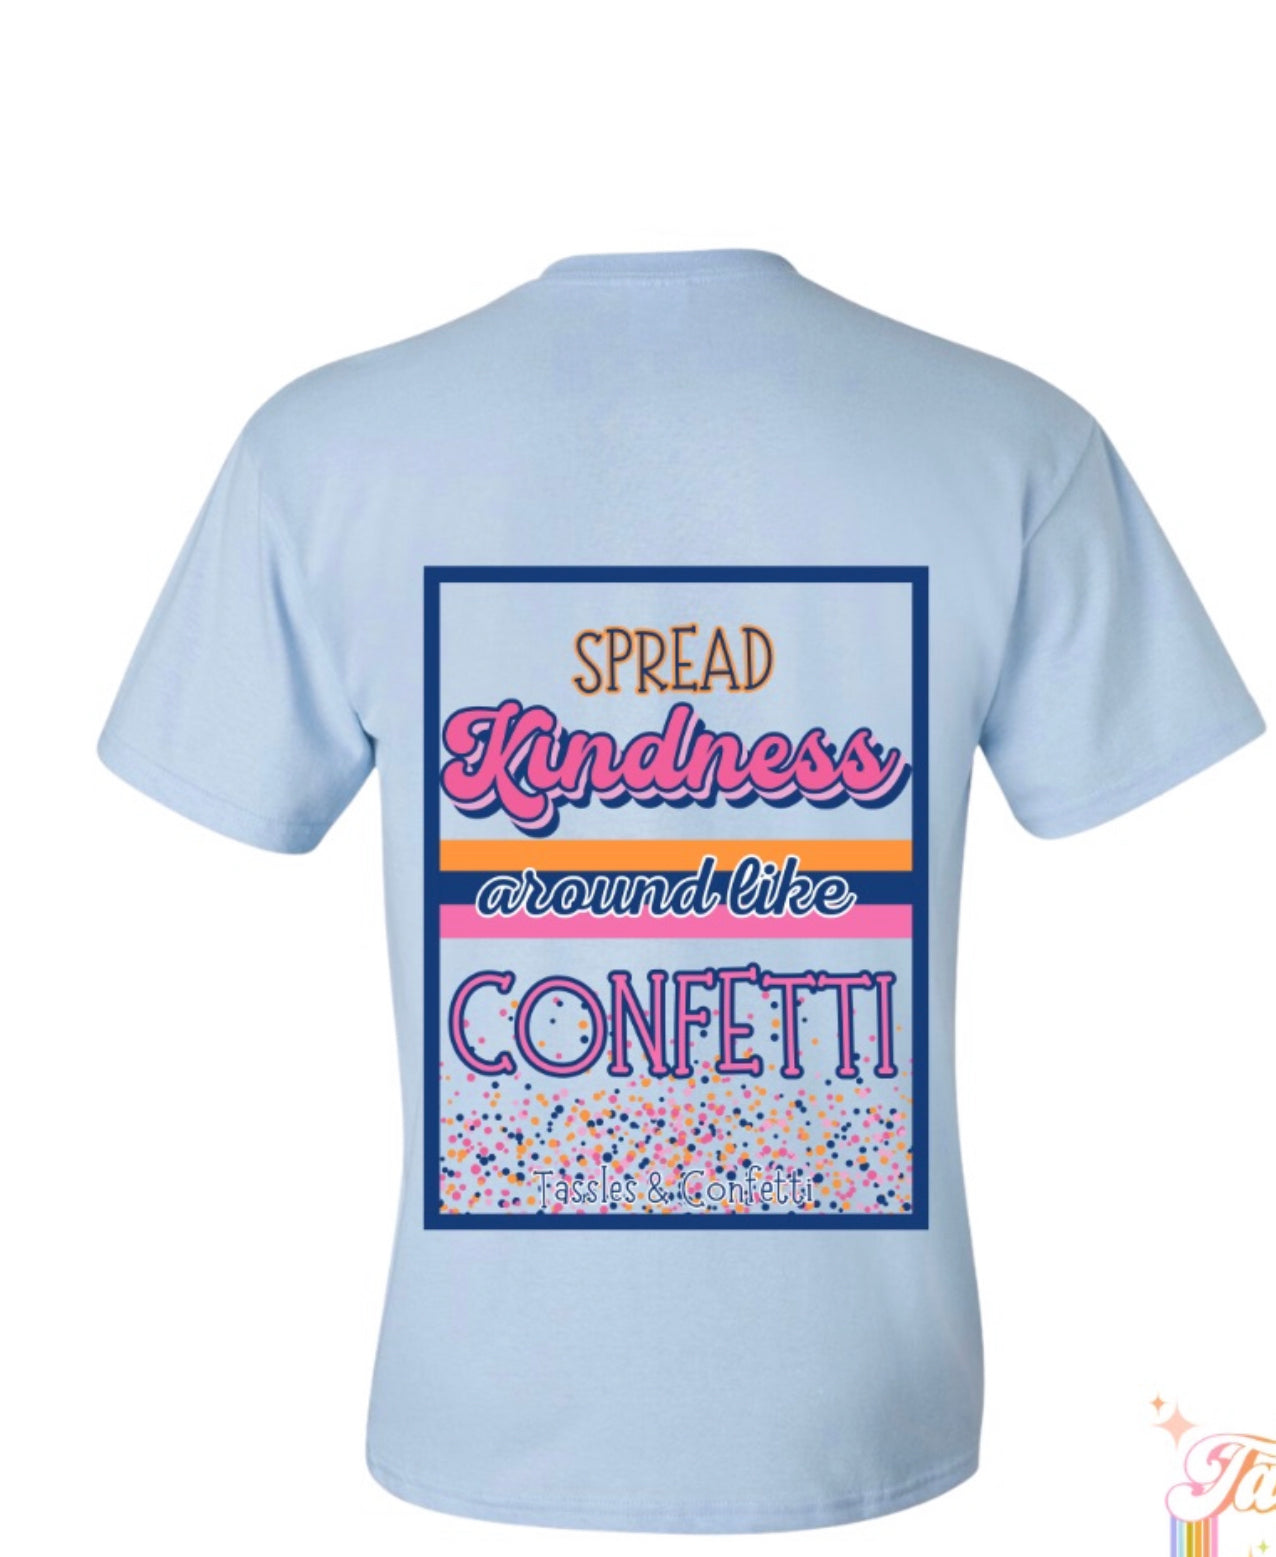 Spread kindness Around Like Confetti (Cotton candy)